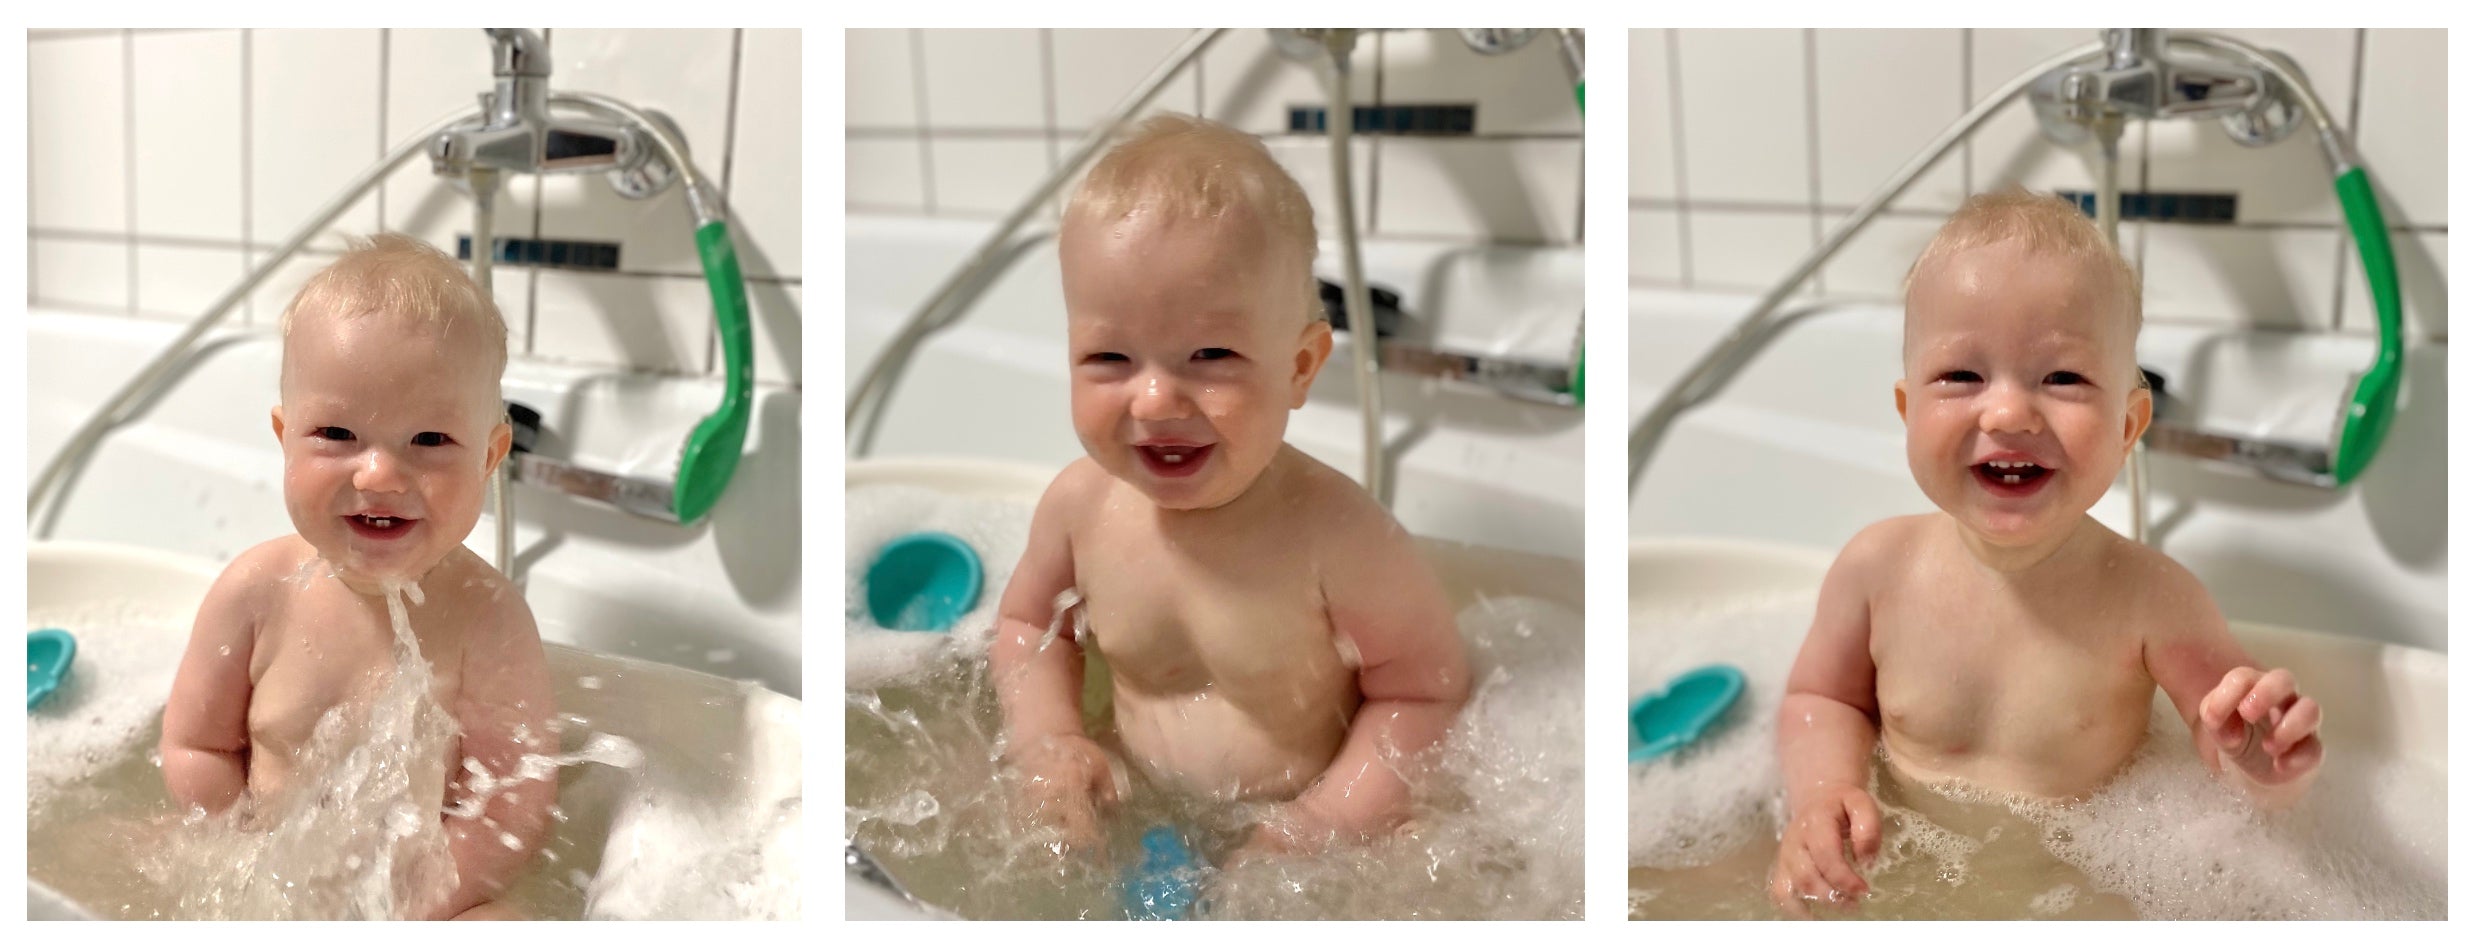 Das Baby baden - alles was du wissen muss!